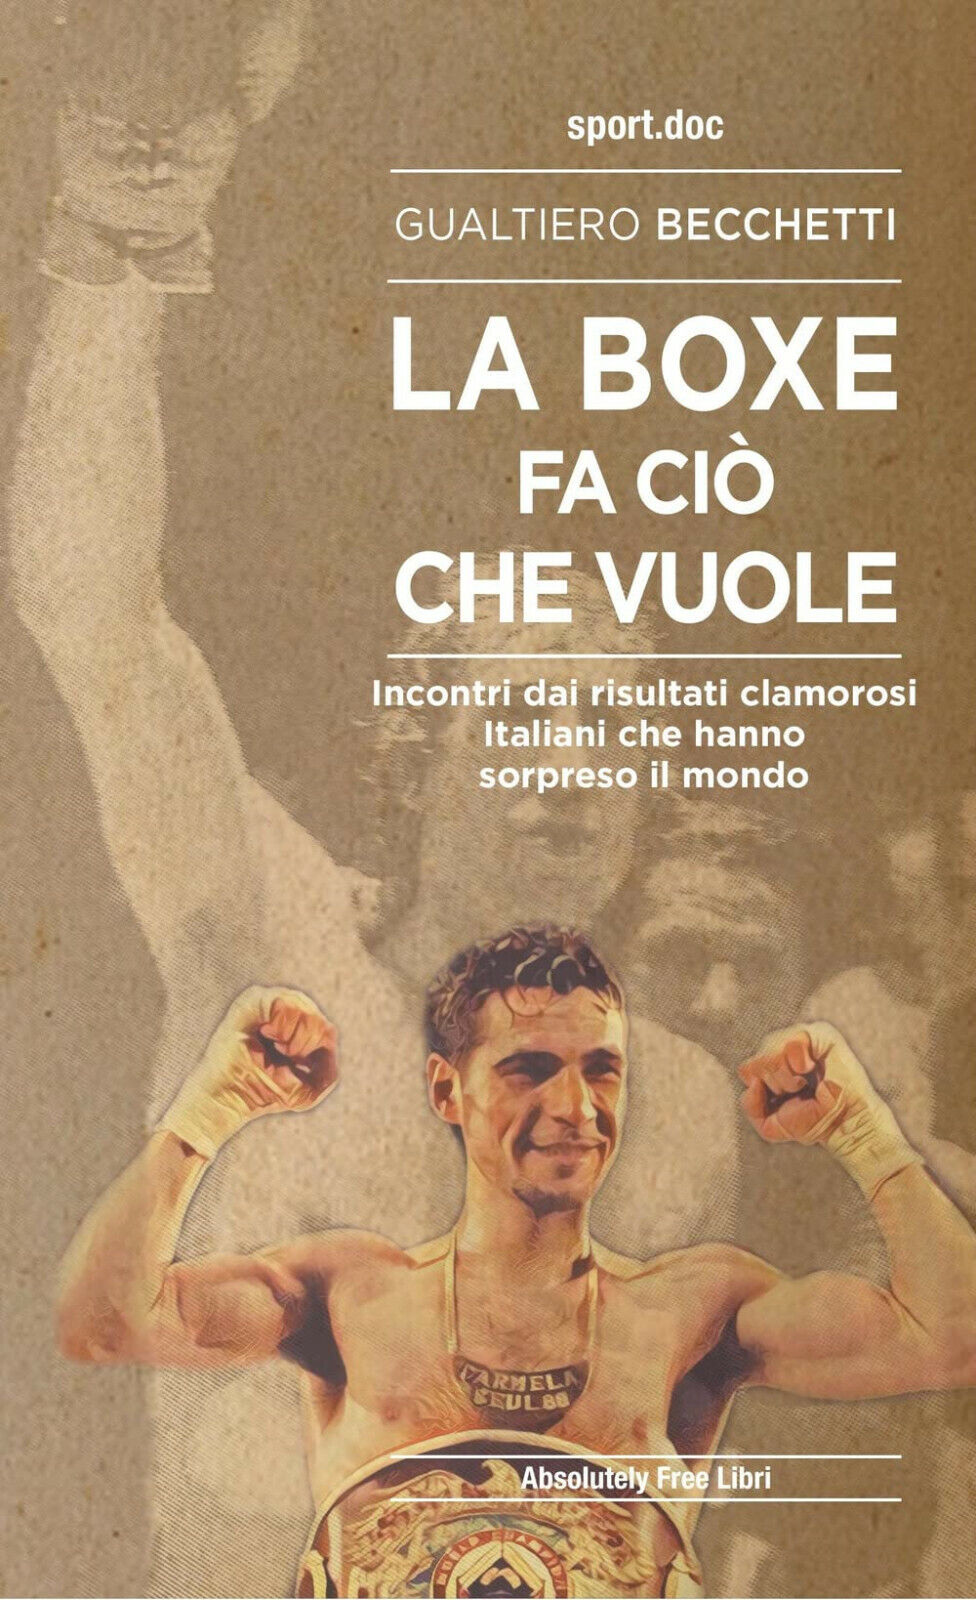 La boxe fa ci? che vuole - Gualtiero Becchetti - Absolutely Free, 2022